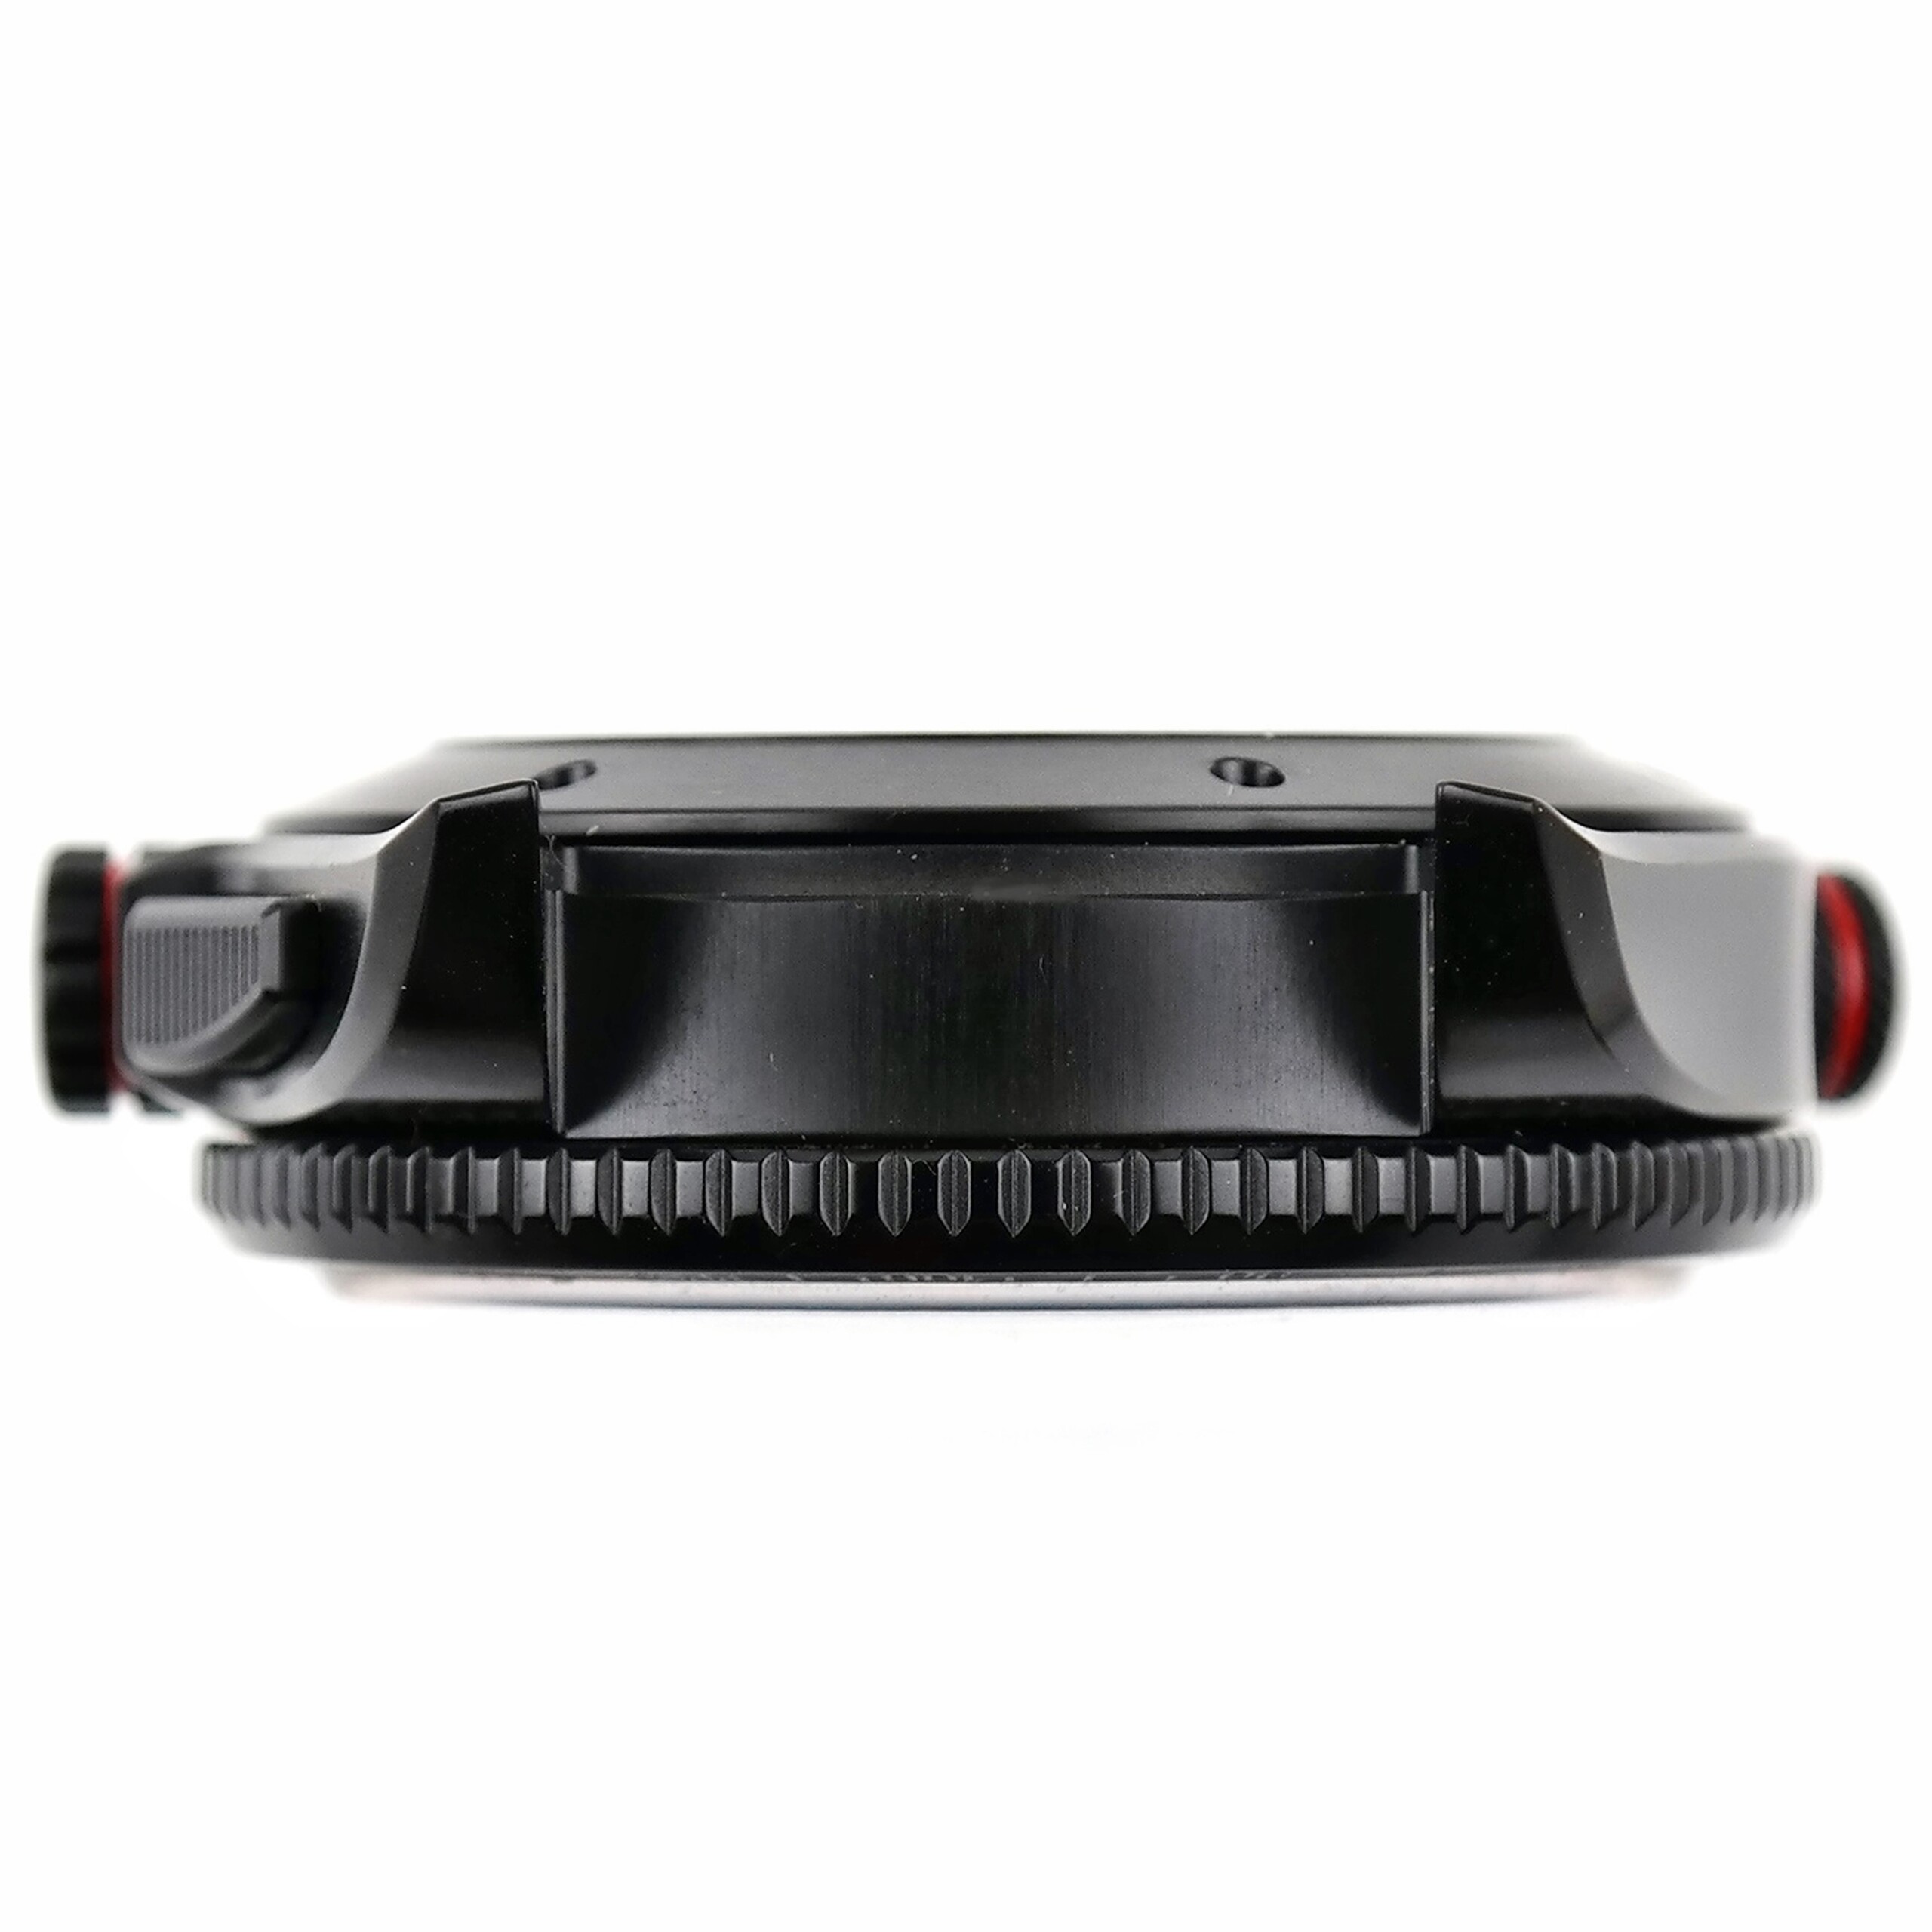 TAG Heuer Grand Carrera Calibre 36 RS Caliper Watch Case Parts